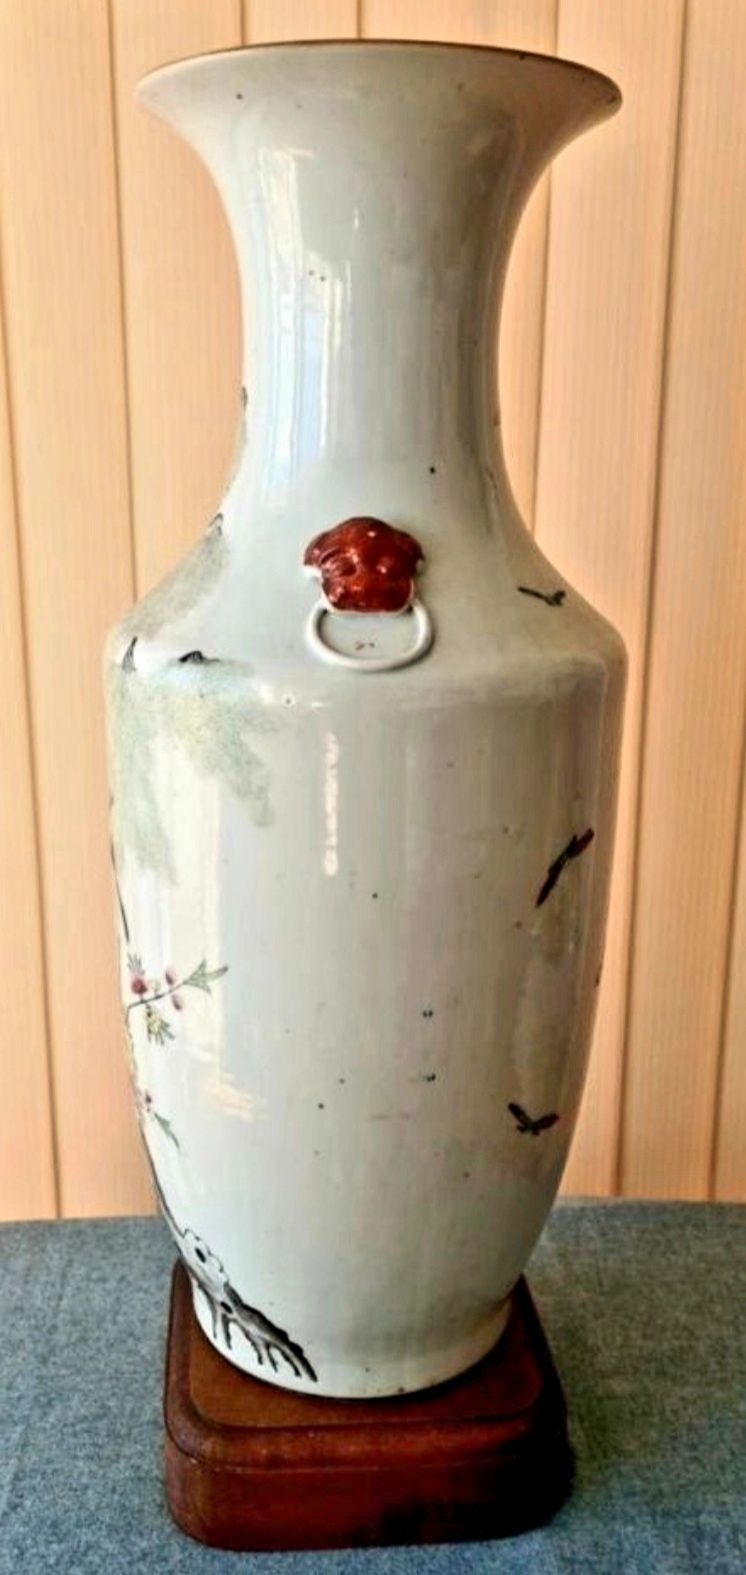 Порцеланов китайска ваза от 19-ти век украсена с птици.